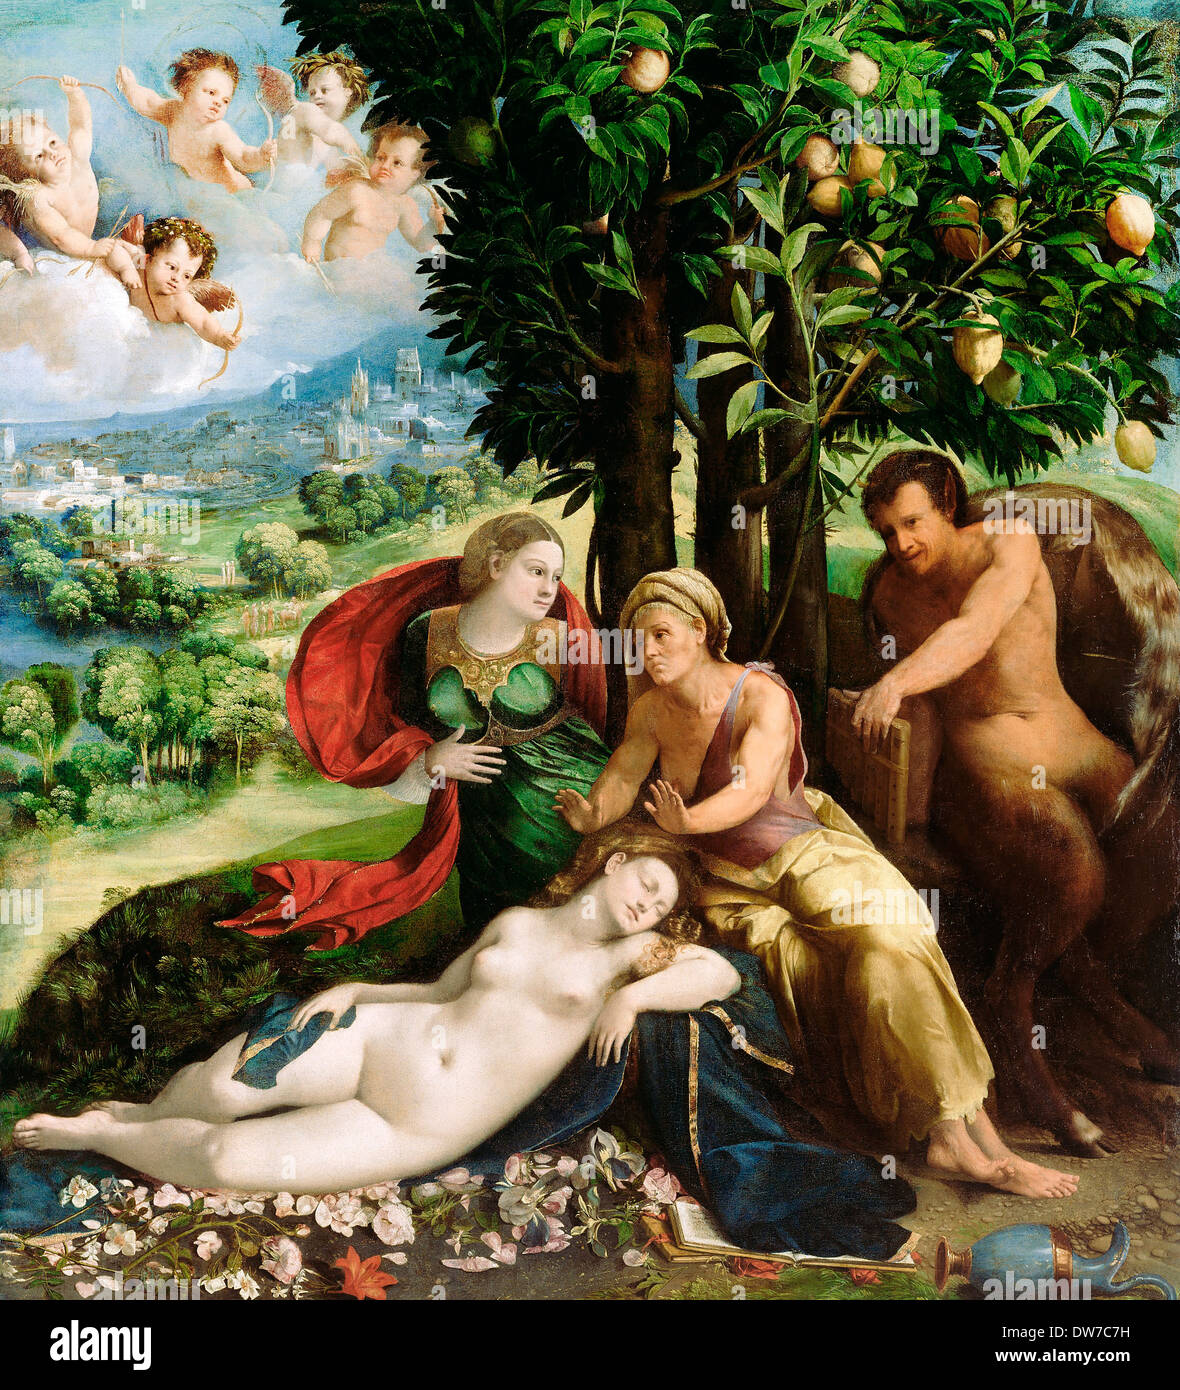 Dosso Dossi, mythologische Szene. Ca. 1524. Öl auf Leinwand. Das J. Paul Getty Museum. Stockfoto